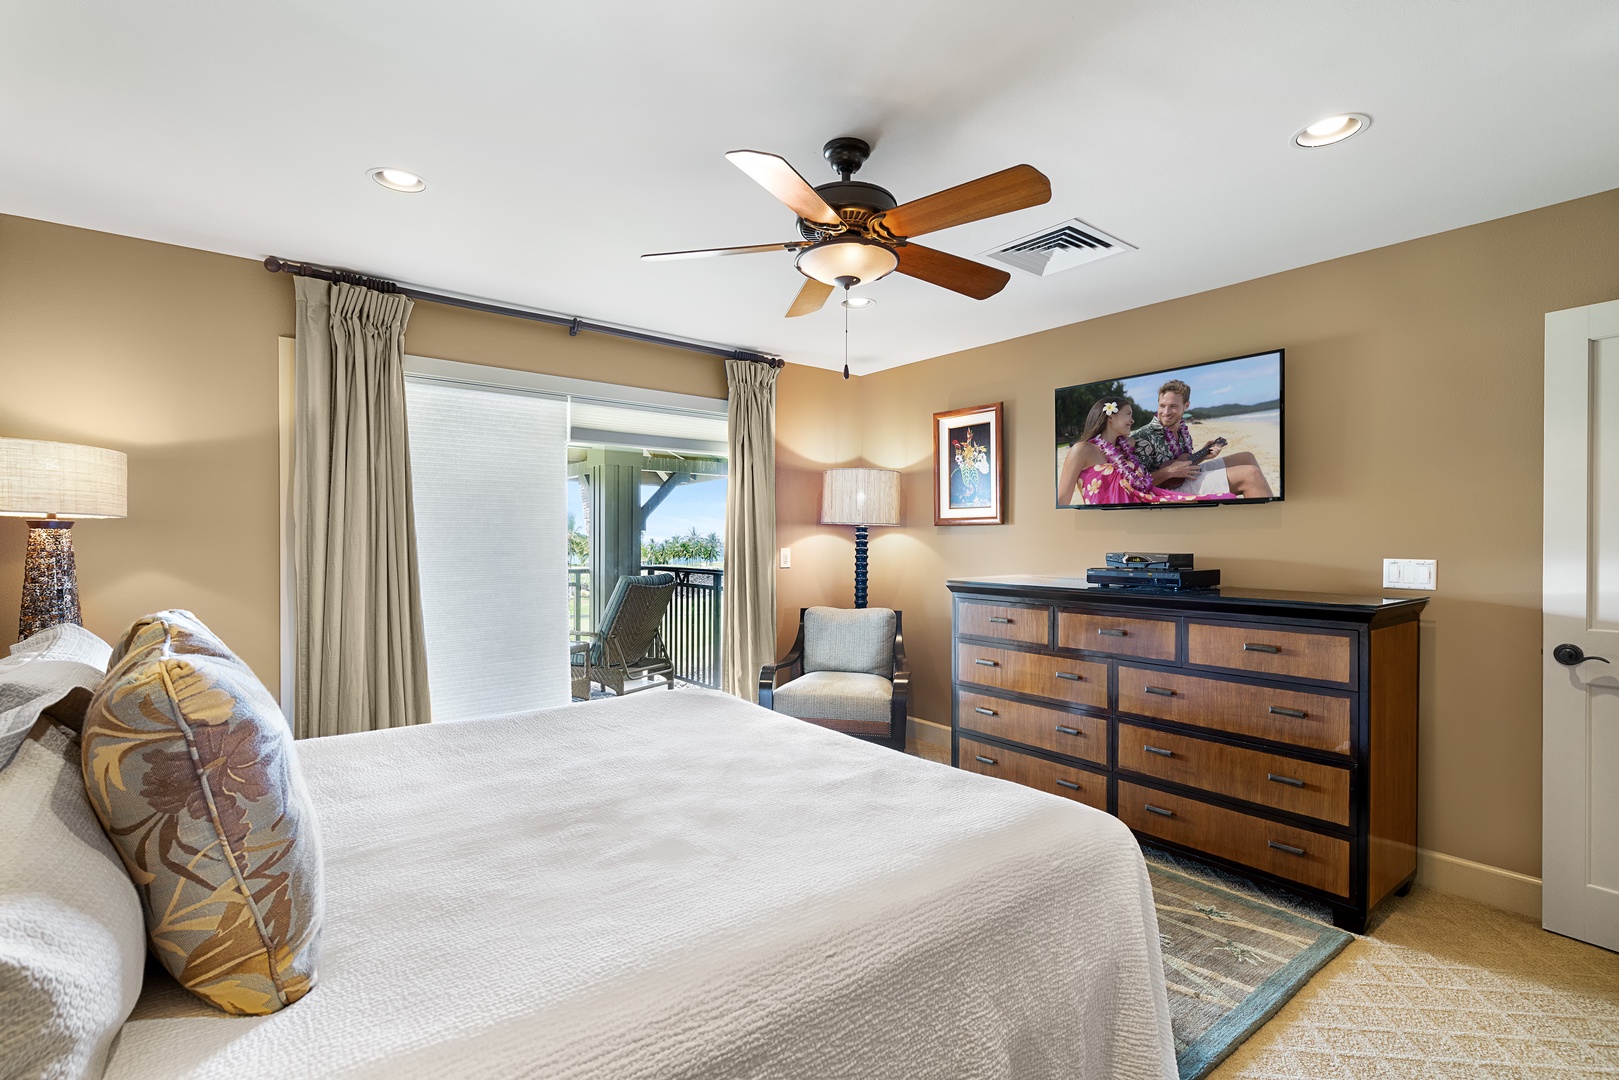 Waikoloa Vacation Rentals, Hali'i Kai at Waikoloa Beach Resort 9F - Primary bedroom with outdoor lanai